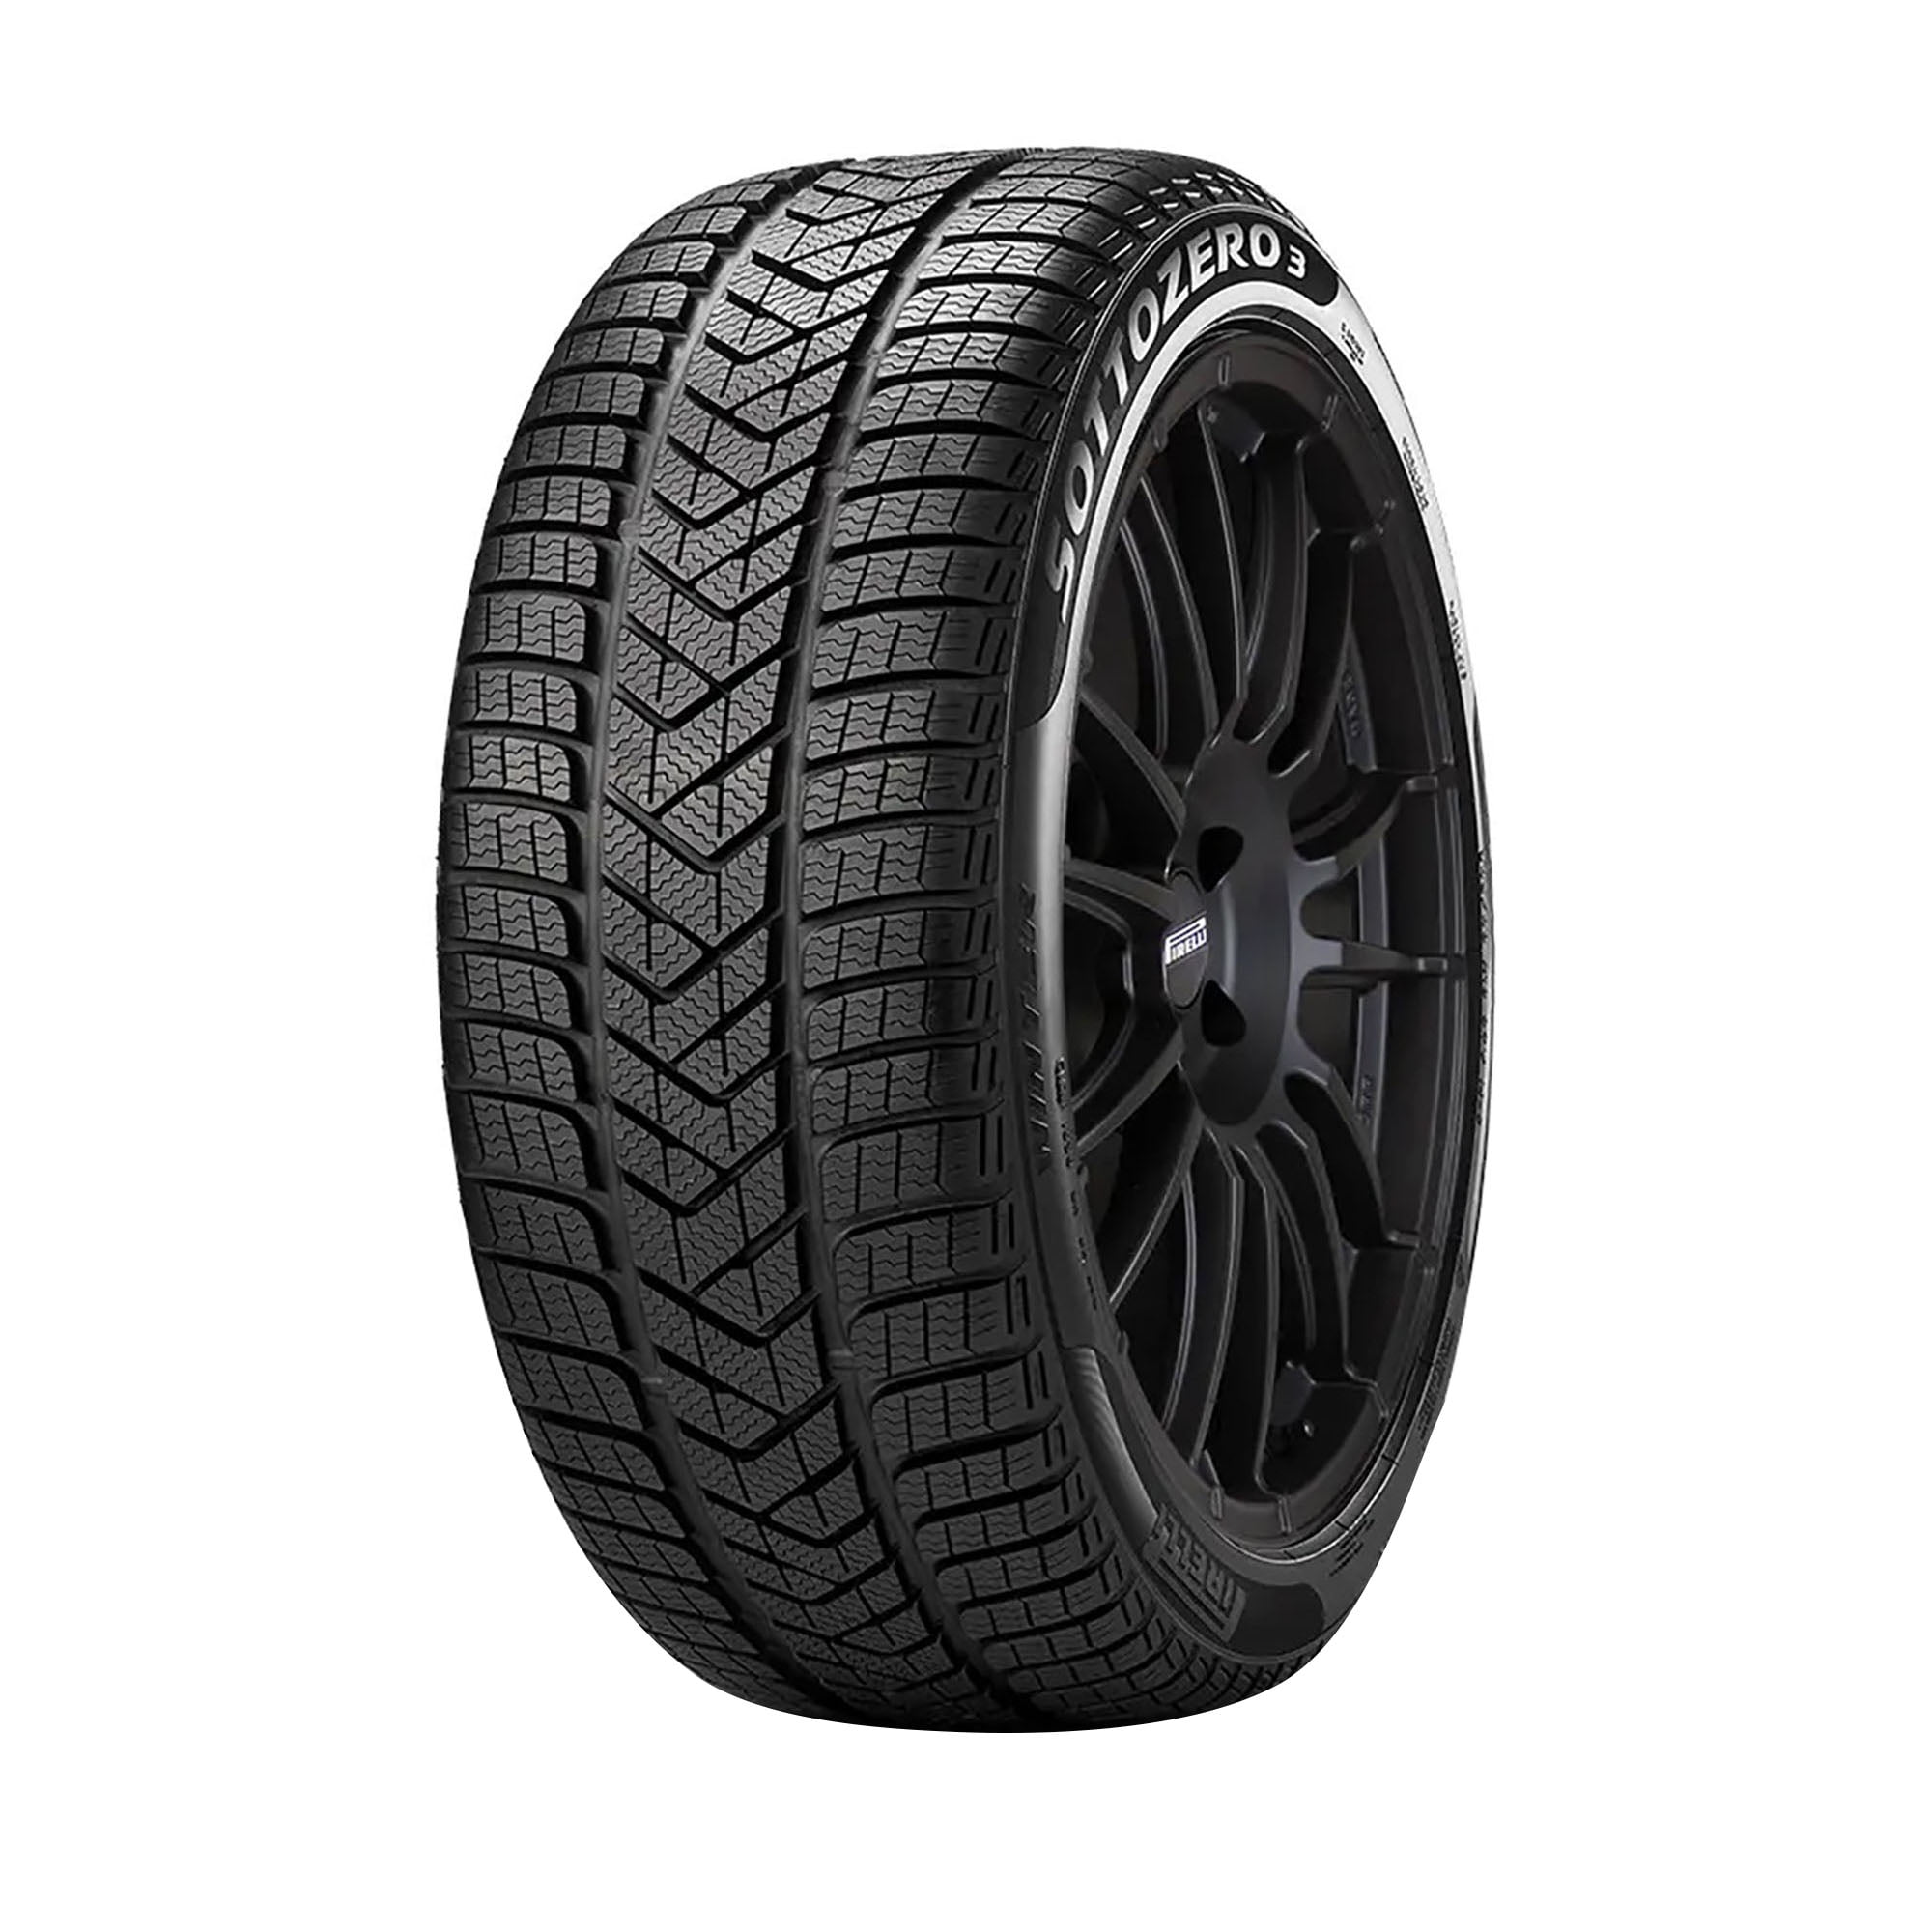 Pirelli Winter Sottozero 3 Winter 275/35R21 103W XL Passenger Tire